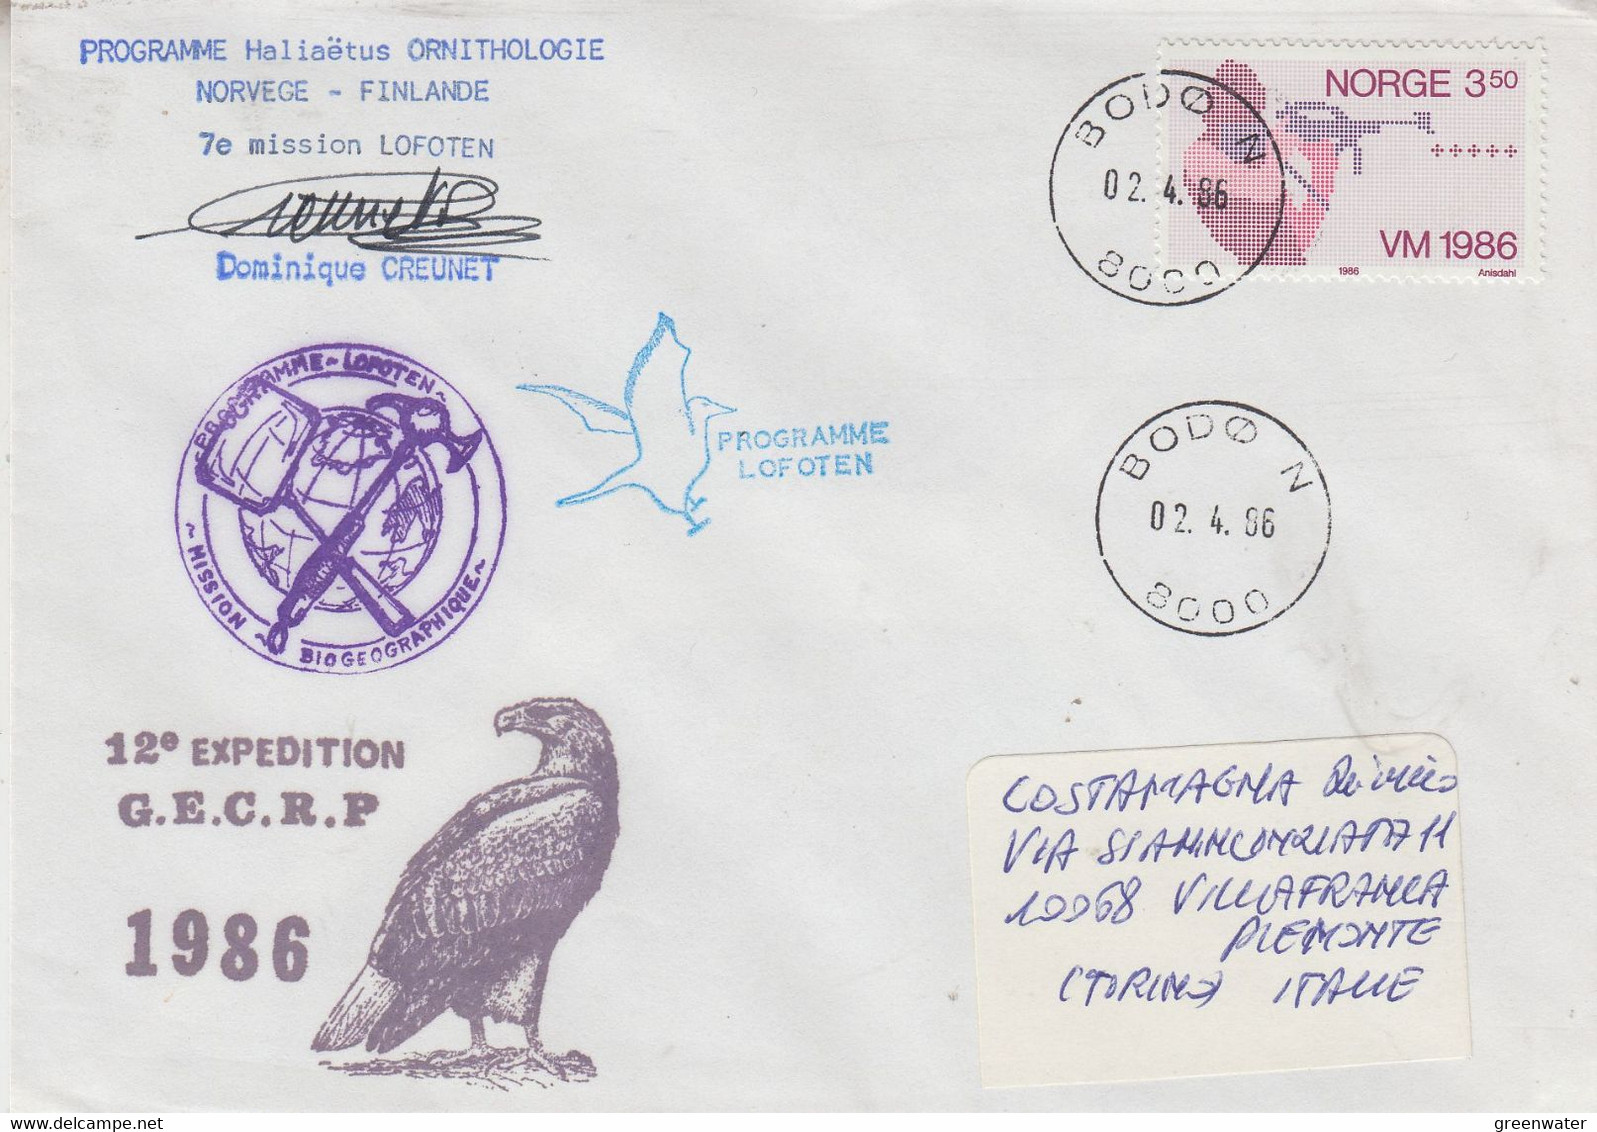 Norway 1986 7e Mission Lofoten Signature Ca Bodo 02-4-1986 (58152) - Research Programs